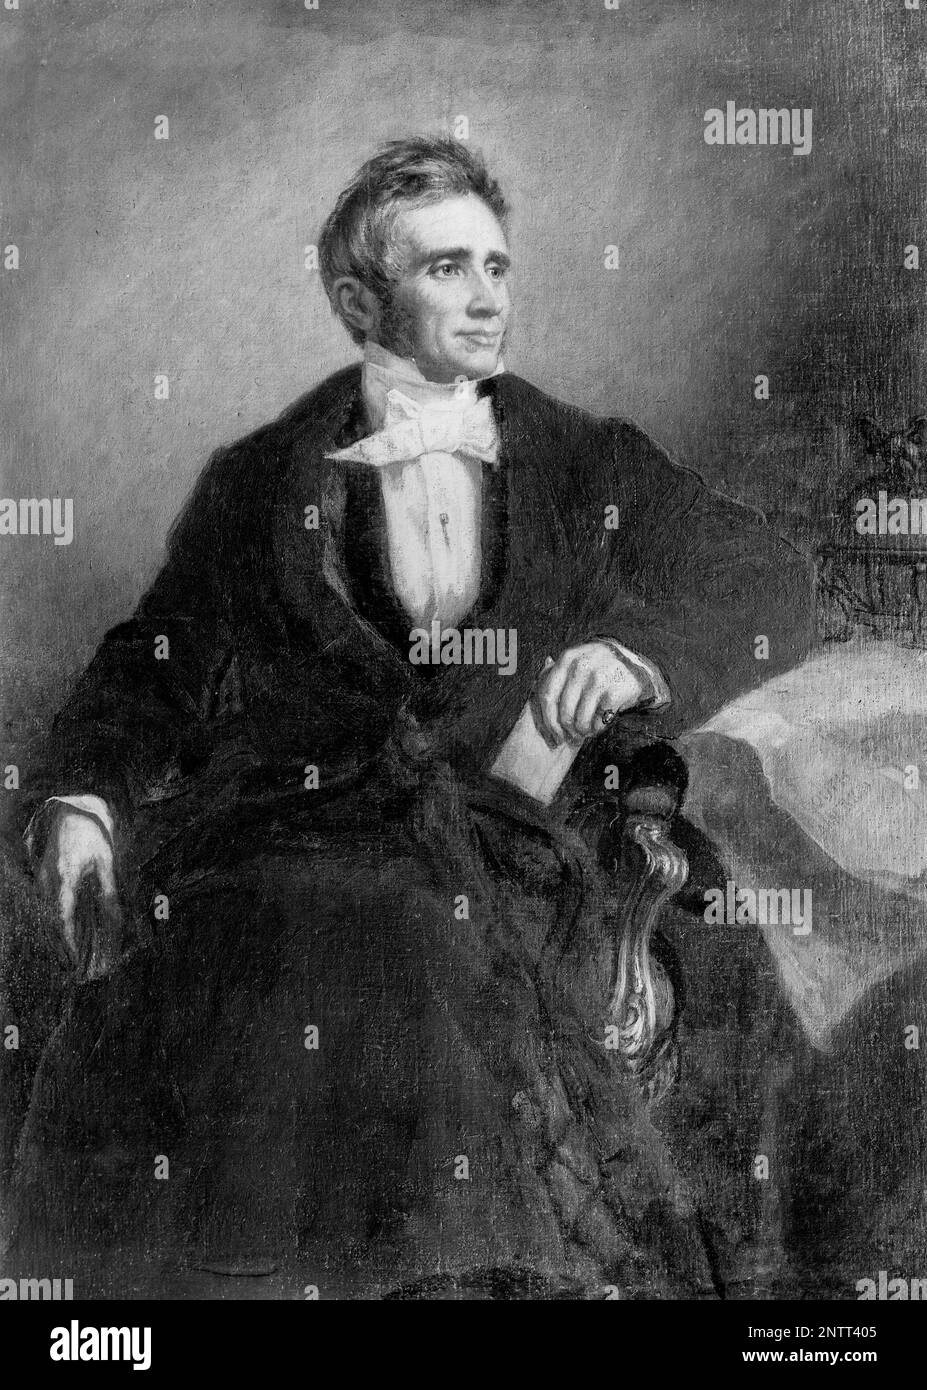 Charles Goodyear (1800-1860), inventore americano e chimico autodidatta che inventò gomma vulcanizzata, fotografia di un ritratto dipinto da George P Healy dopo artista sconosciuto, 1900-1912 Foto Stock